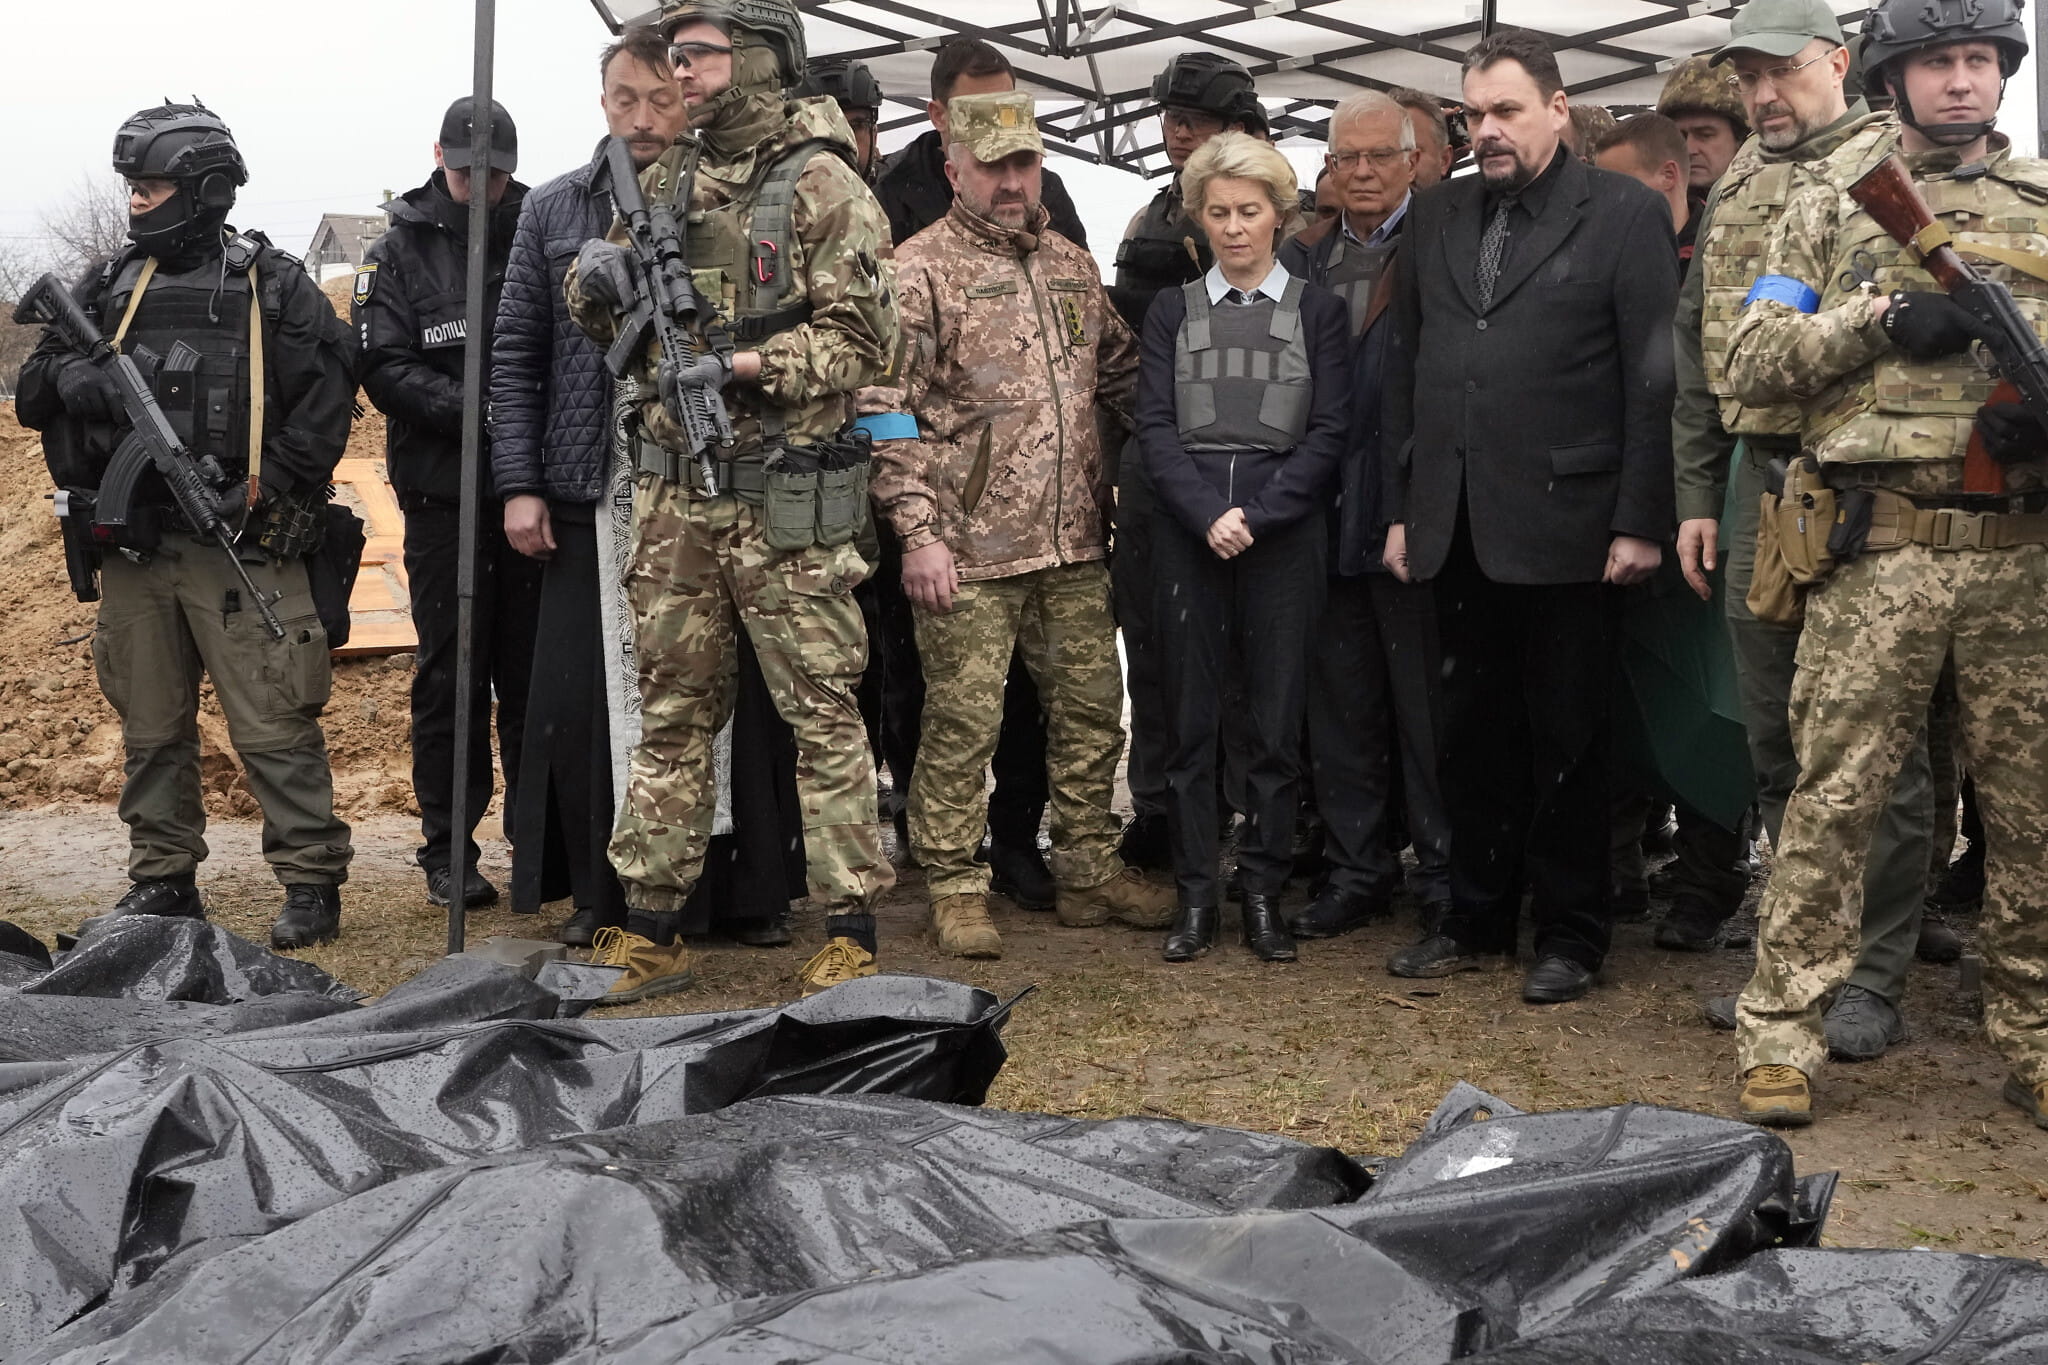 La presidenta de la Comisión Europea, Ursula von der Leyen, en el centro, observa los cuerpos cubiertos de civiles muertos en Bucha, en las afueras de Kiev, Ucrania, el viernes 8 de abril de 2022. (AP Photo/Efrem Lukatsky)